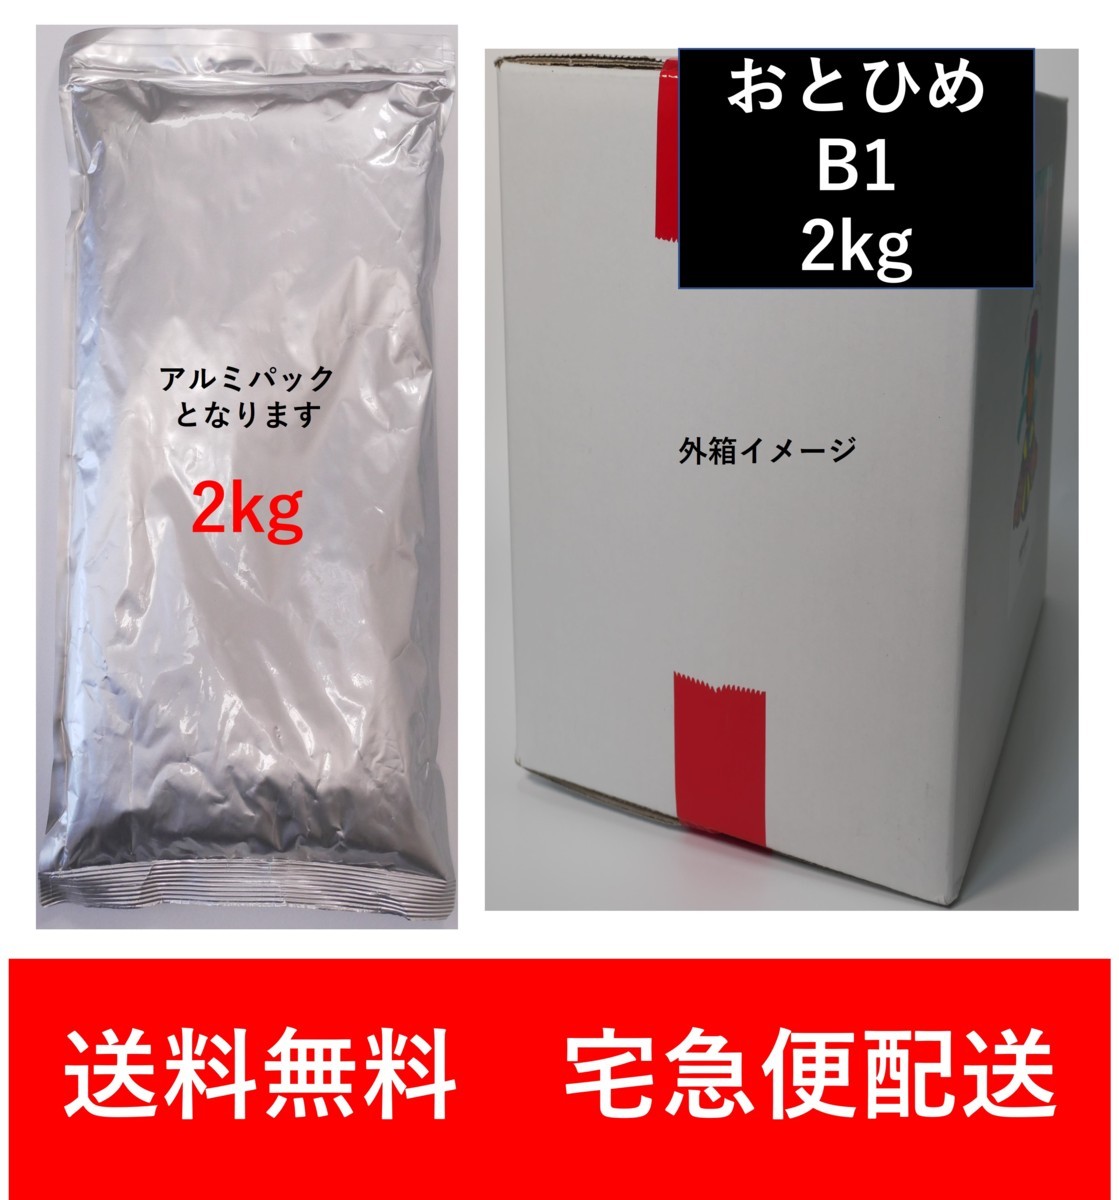 高い品質 (メーカー直送) 日清丸紅飼料 おとひめ 5袋 粒径(mm)0.36 